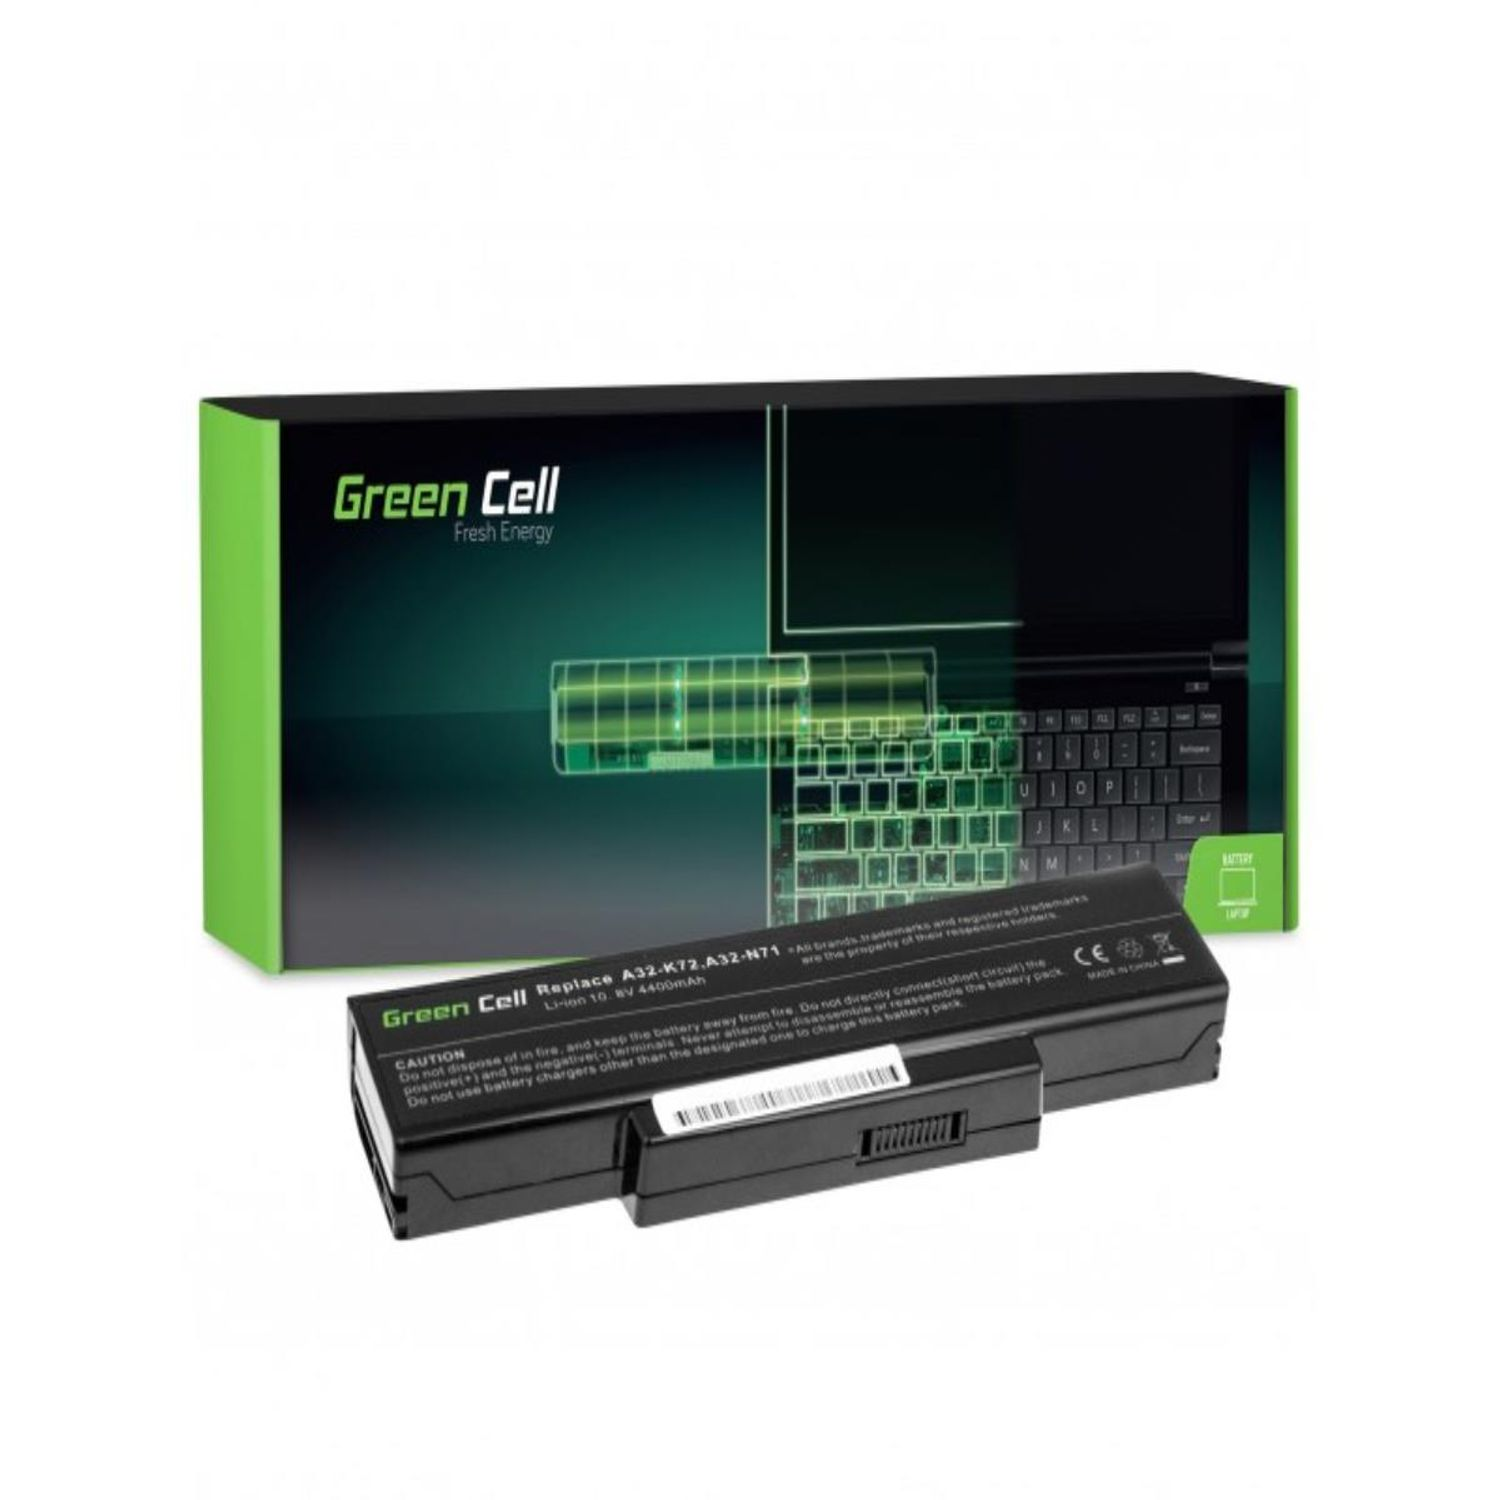 N71 Akku Asus K72 Laptop GREEN Akku Lithium-Ionen-Akku Batterien / A32-K72 für CELL